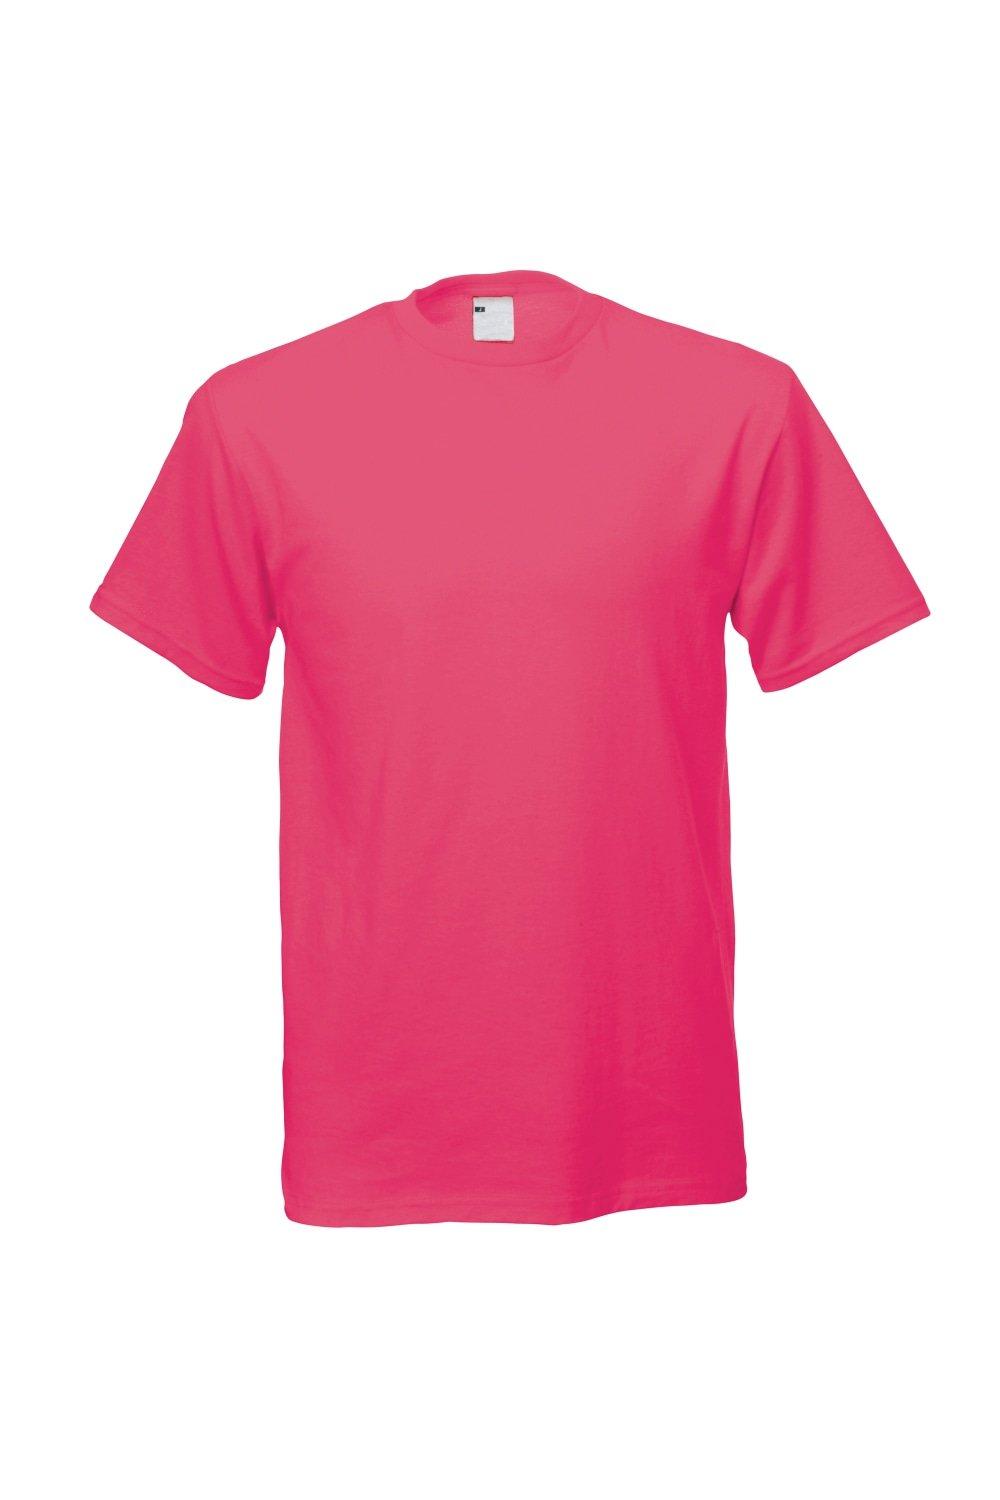 Повседневная футболка с коротким рукавом Universal Textiles, розовый мужская футболка ретро кассета 2xl серый меланж